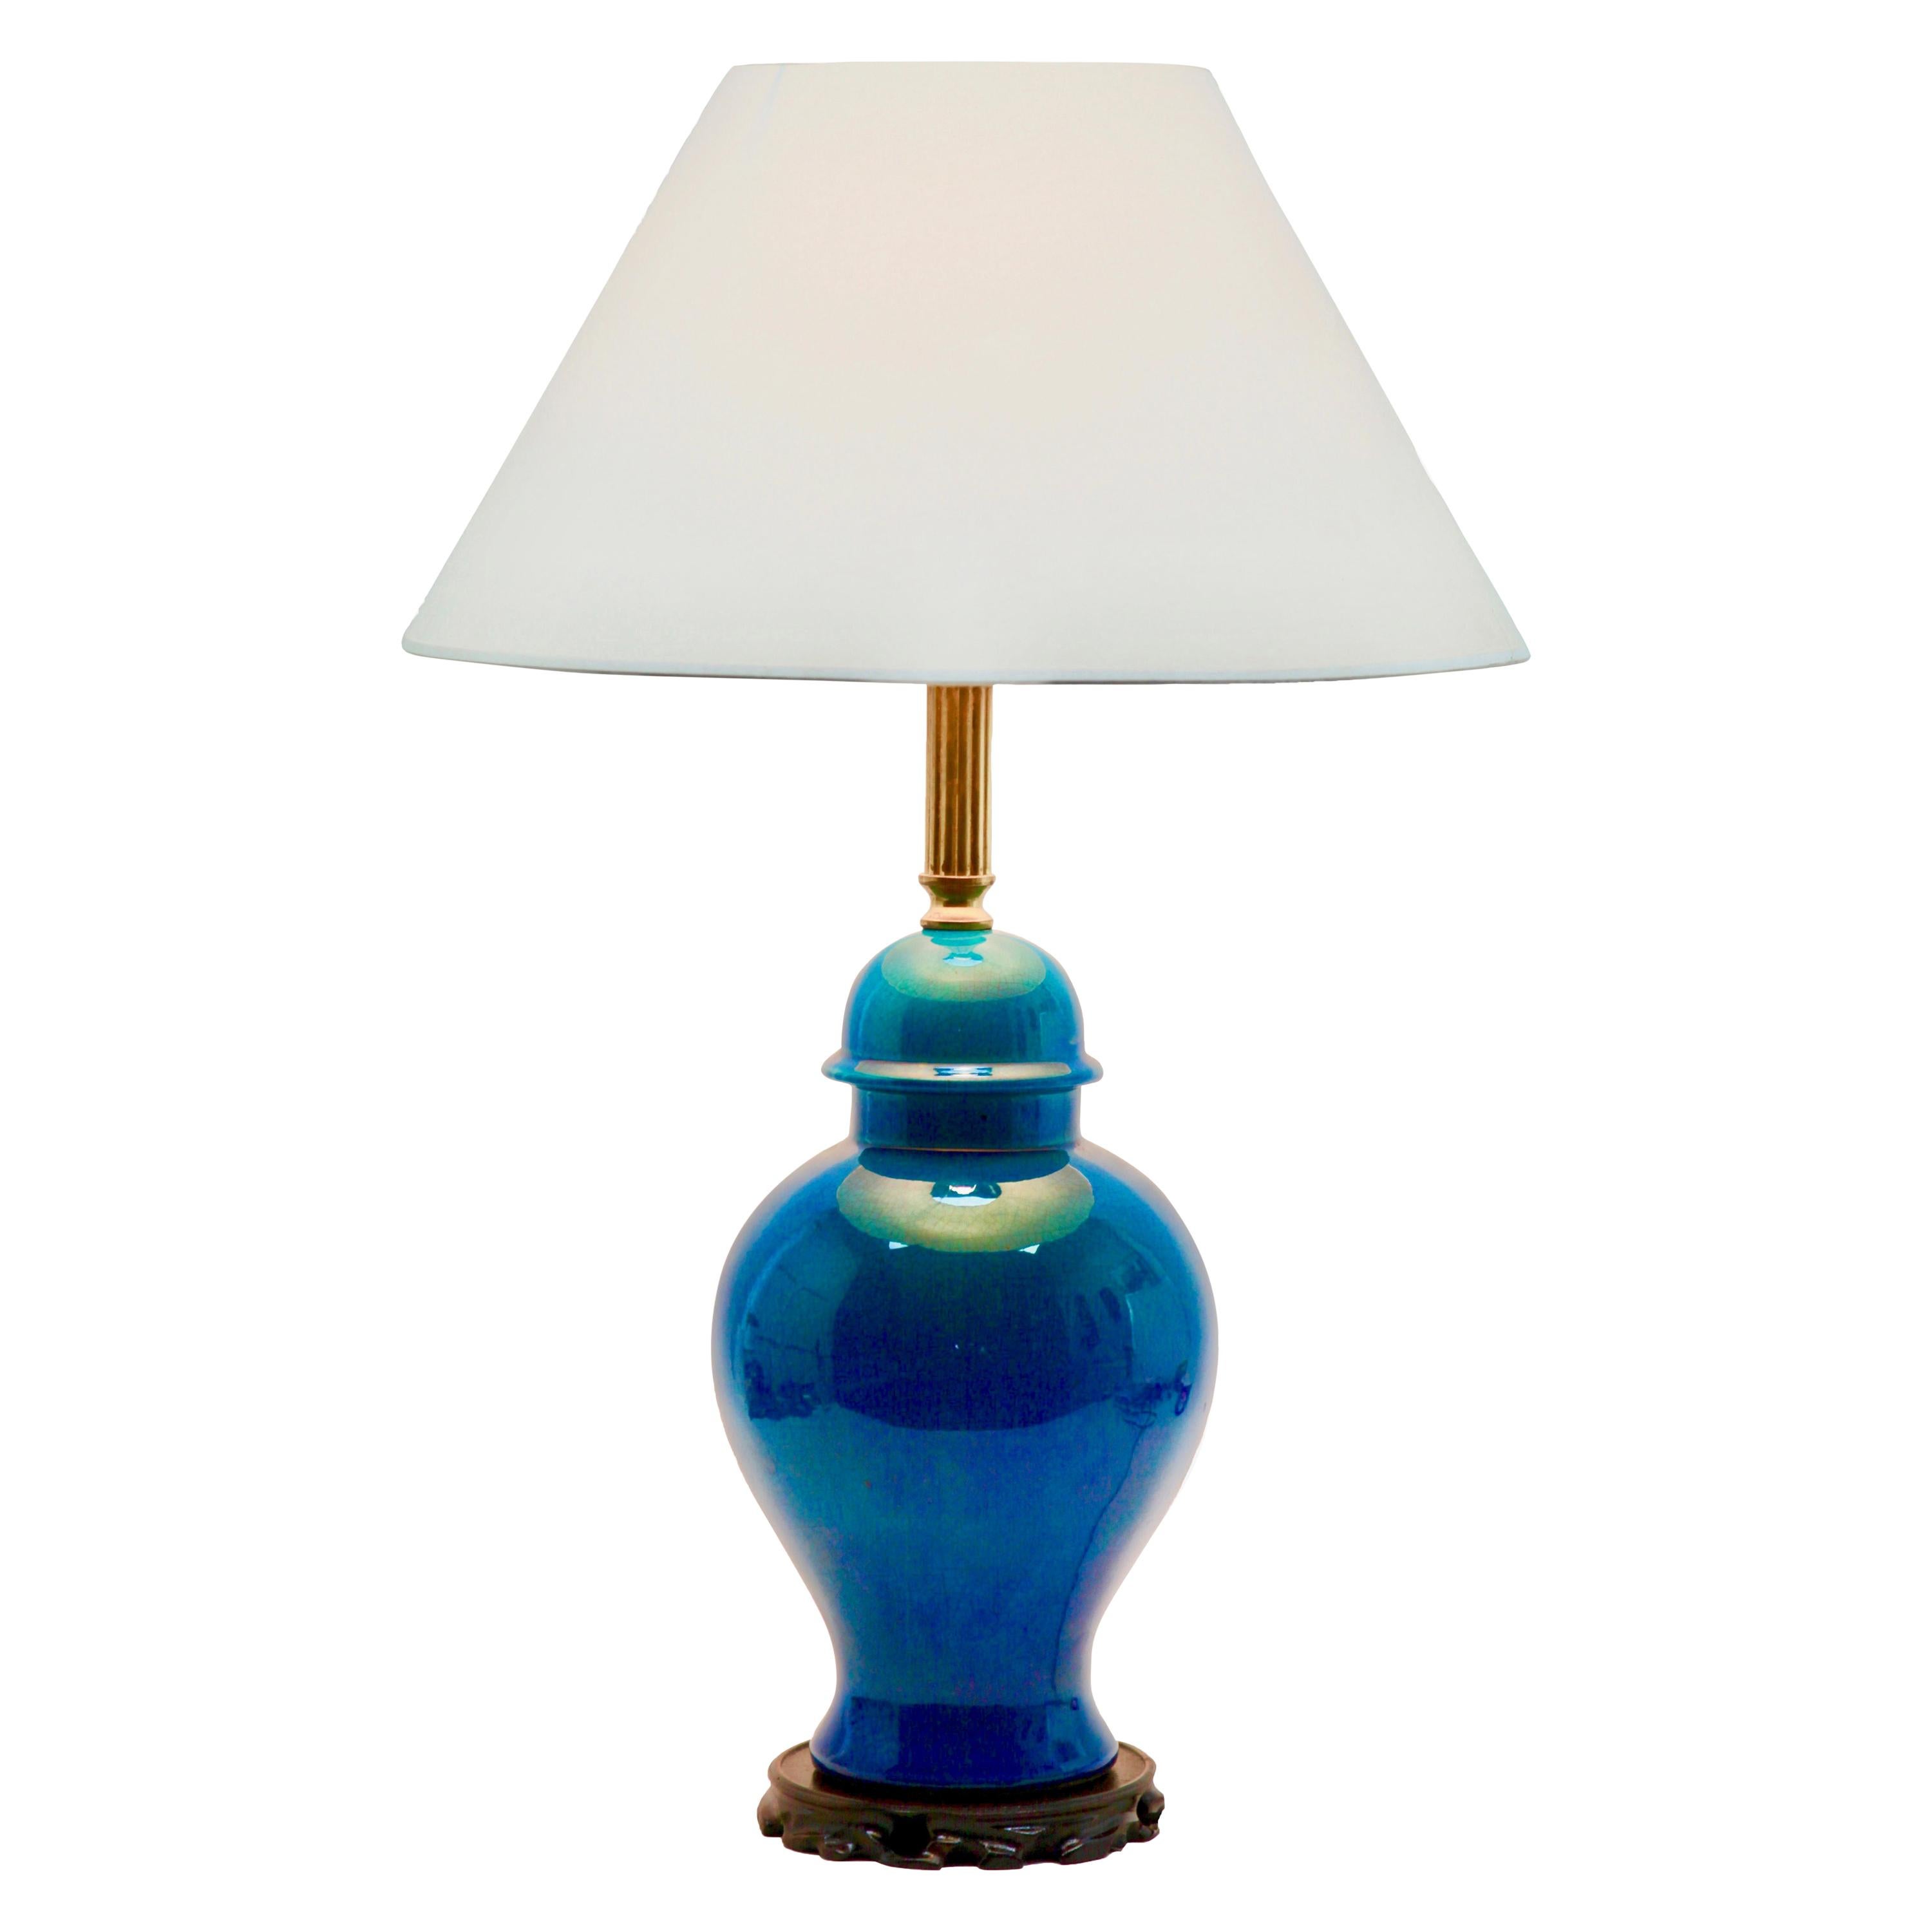 2 Turquoise Glazed Large Chinese Ceramic Table Lamp with Crackle Glaze